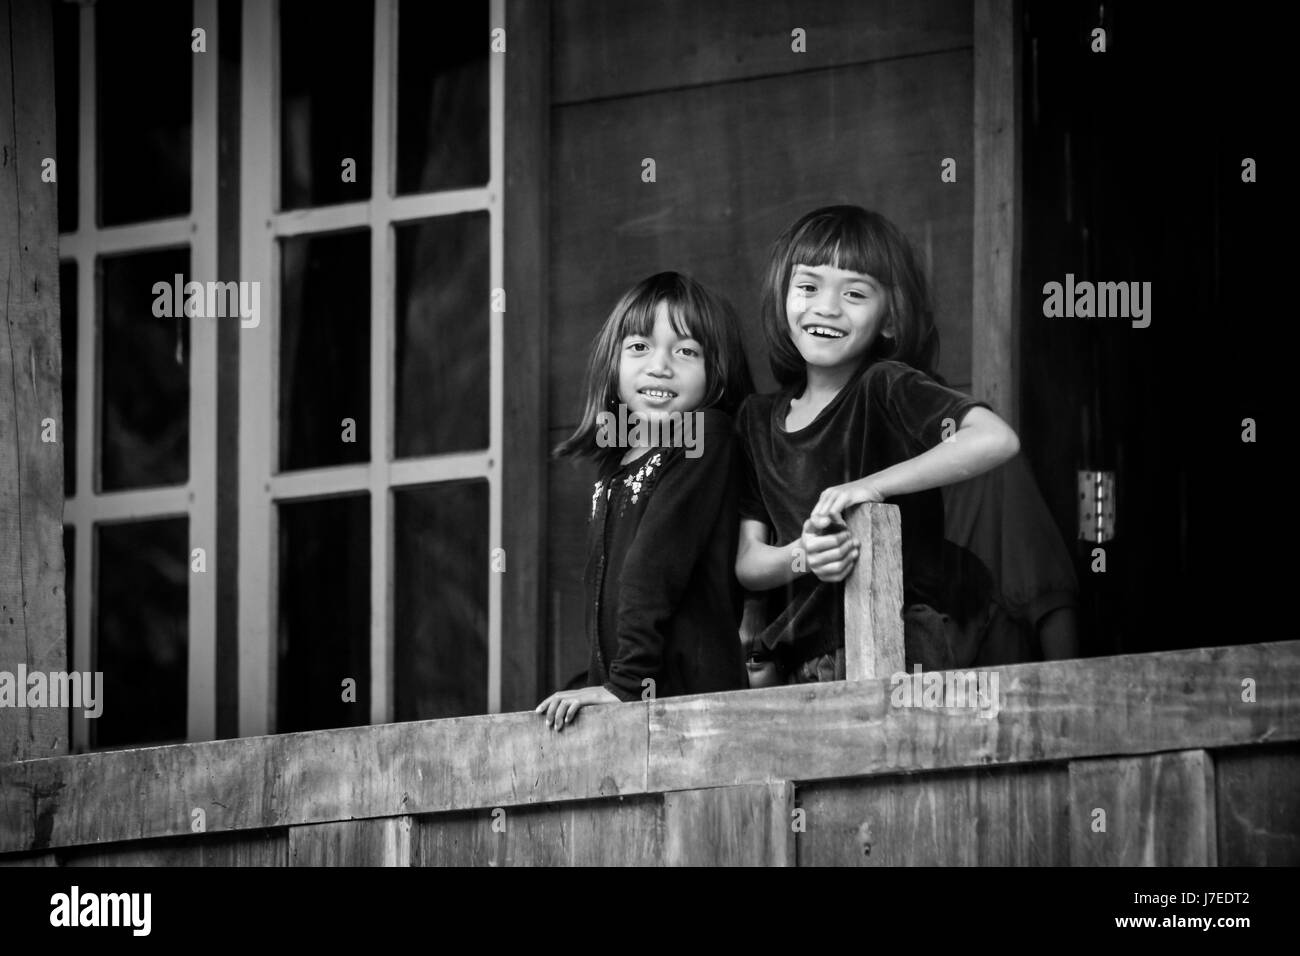 Hermoso blanco y negro natural franco imagen retrato de niños sonrientes de la raza indígena del pueblo Torajan en Sulawesi parado en el balcón Foto de stock